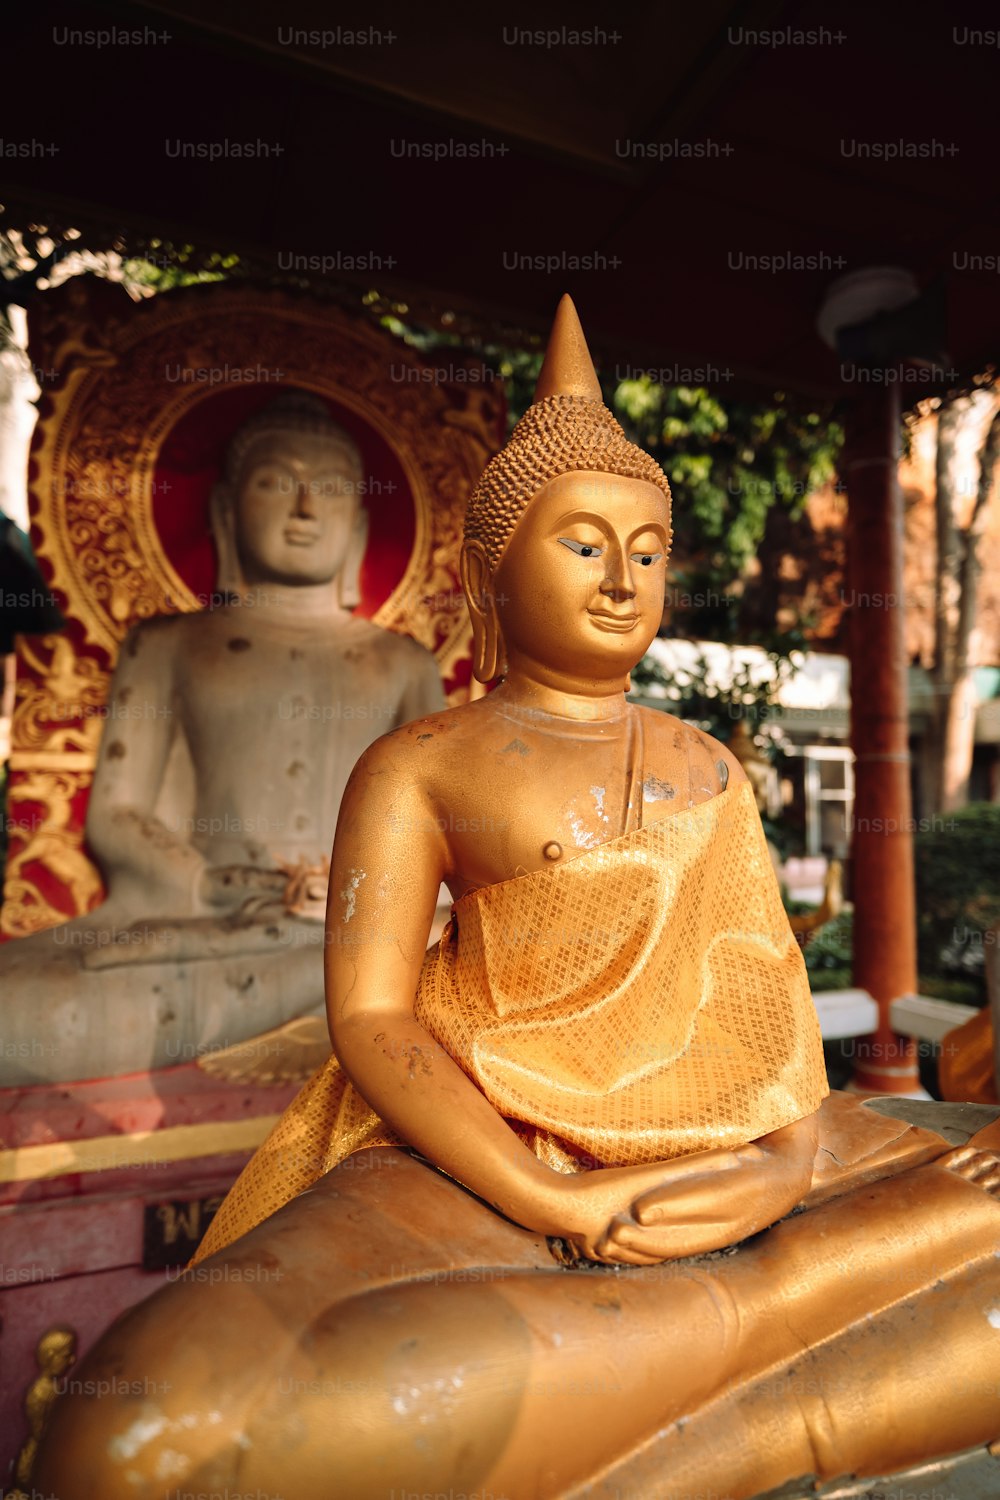 Una statua dorata del Buddha seduta sulla cima di una statua di legno